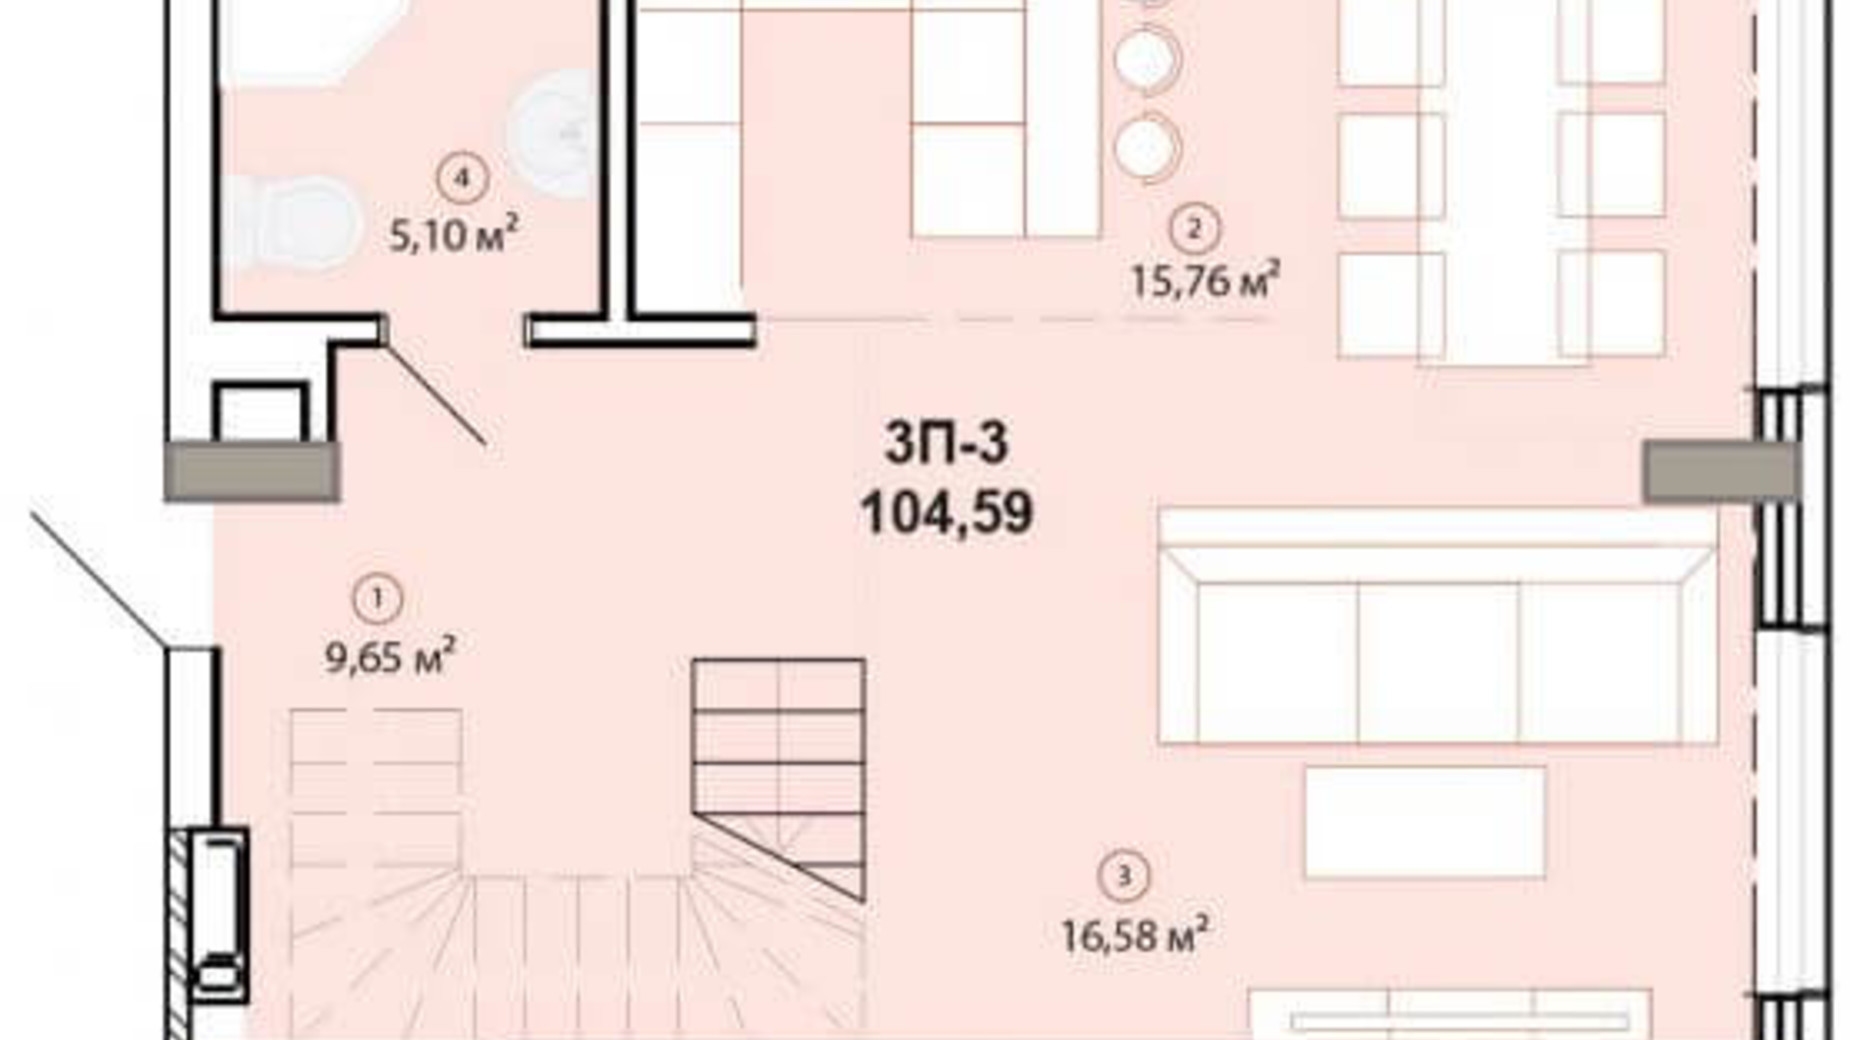 Планировка много­уровневой квартиры в ЖК Edelweiss House 104.59 м², фото 225134